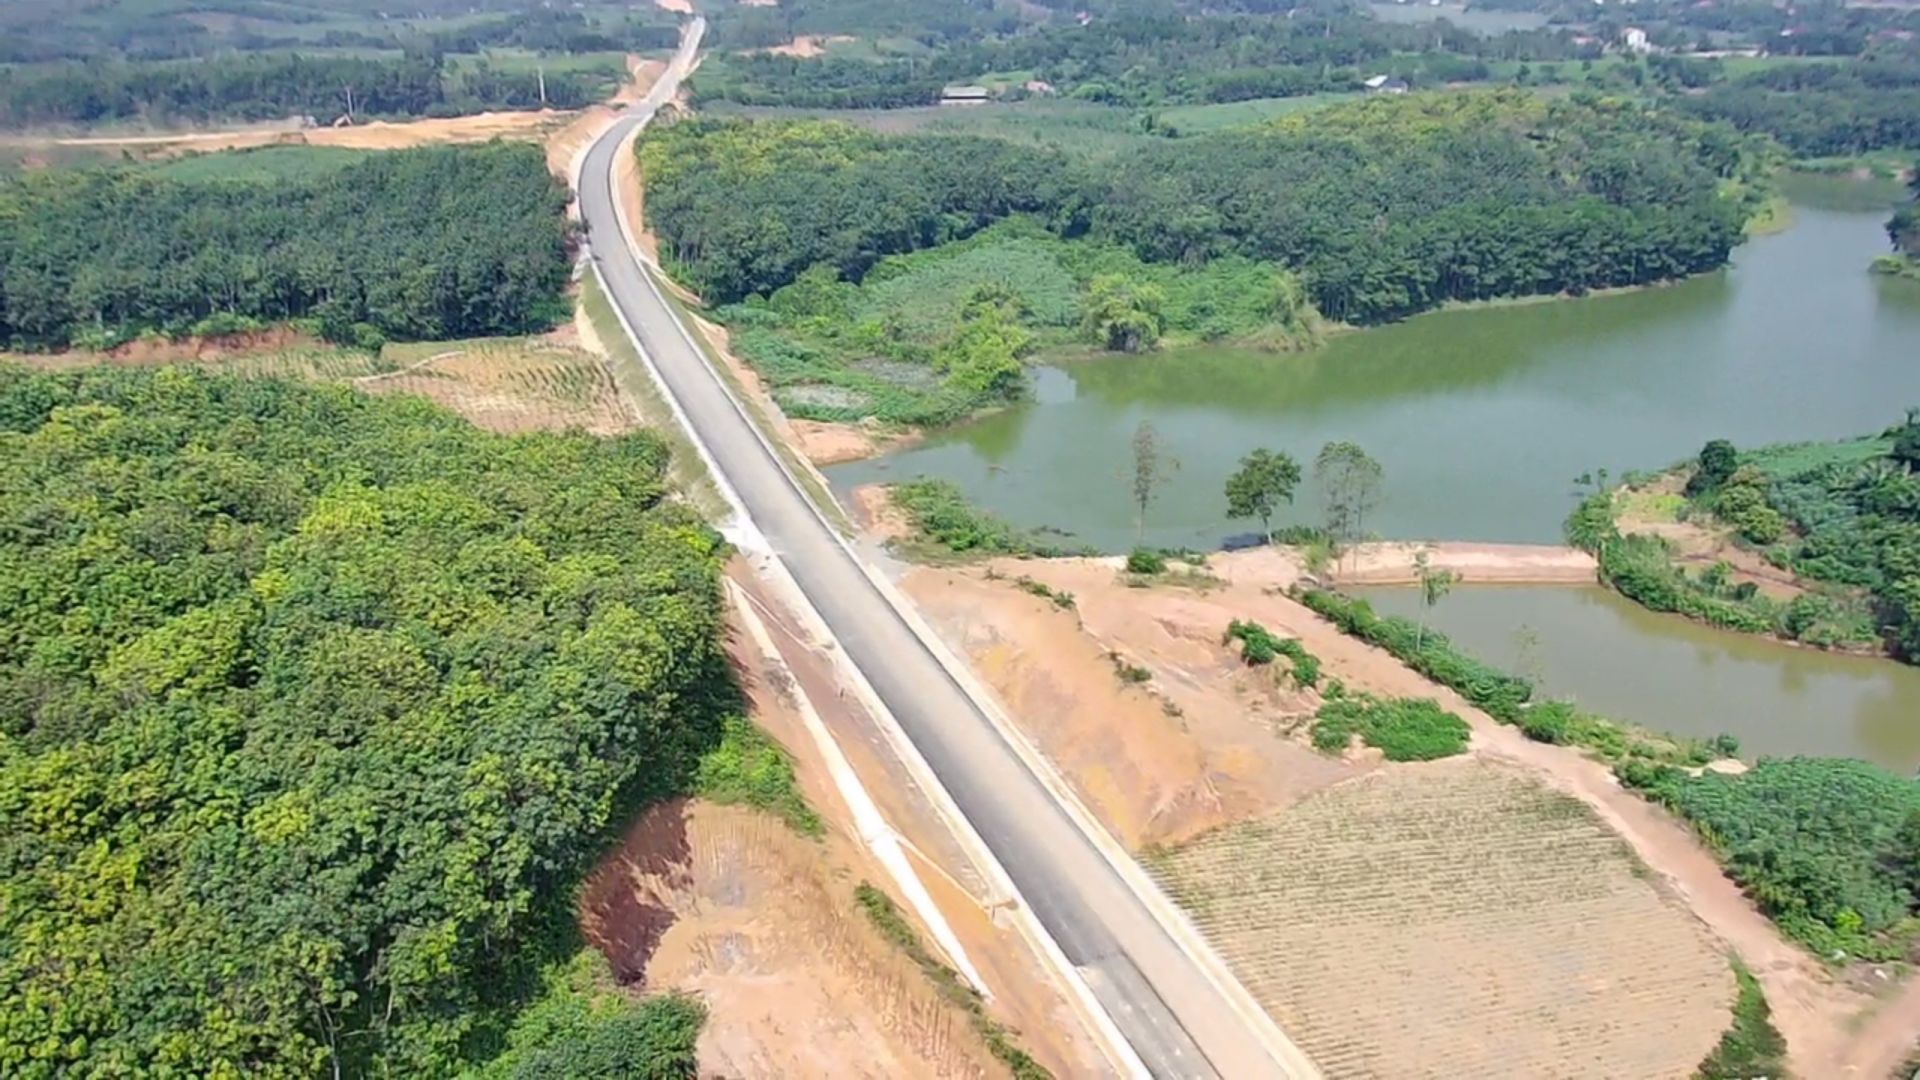 Dự án đường giao thông liên vùng kết nối đường Hồ Chí Minh với quốc lộ 70B, quốc lộ 32C tỉnh Phú Thọ đi tỉnh Yên Bái đang được đẩy nhanh tiến độ, phấn đấu cuối năm 2023 đưa vào sử dụng